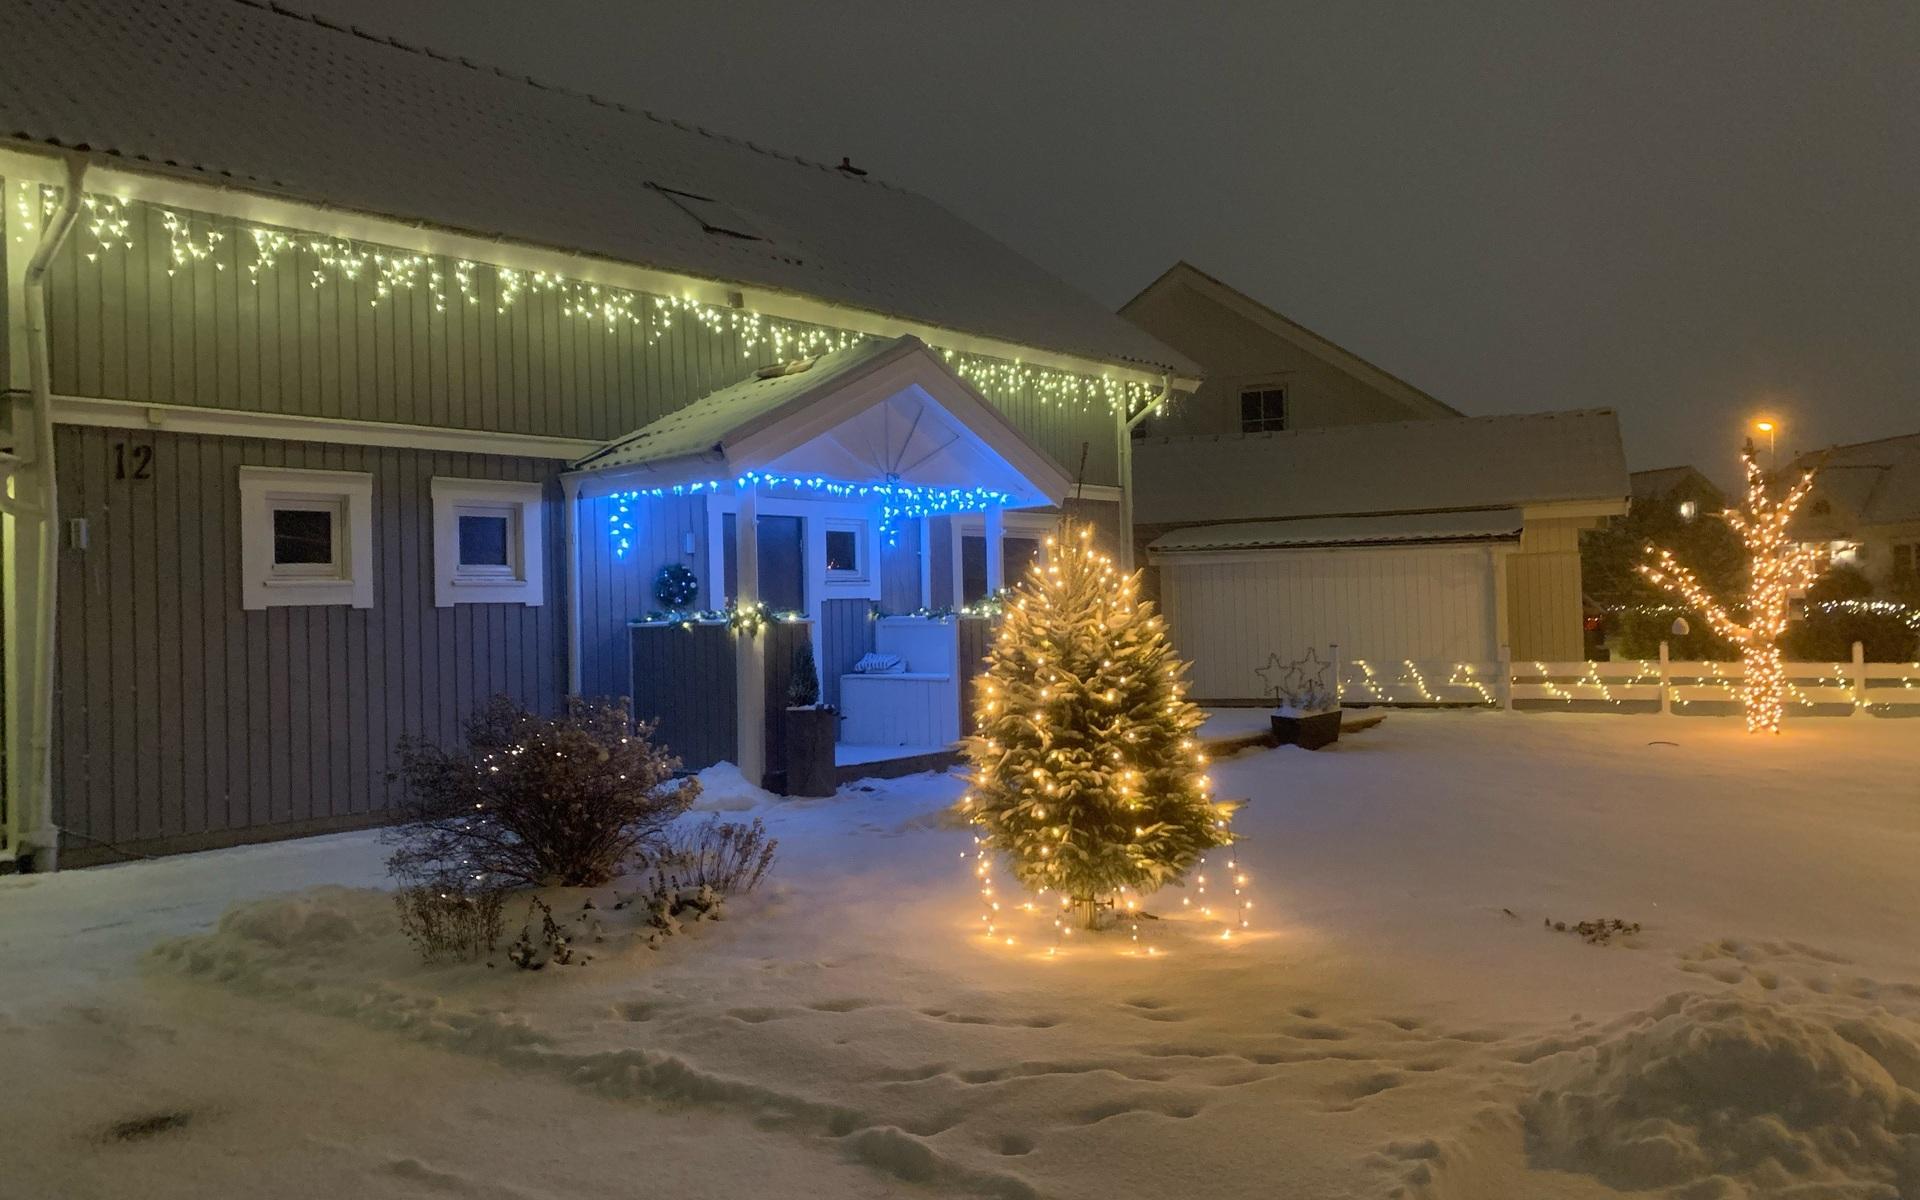 Hos Cenny Lüttners i Tölö villastad blev det julstämning när snön kom.